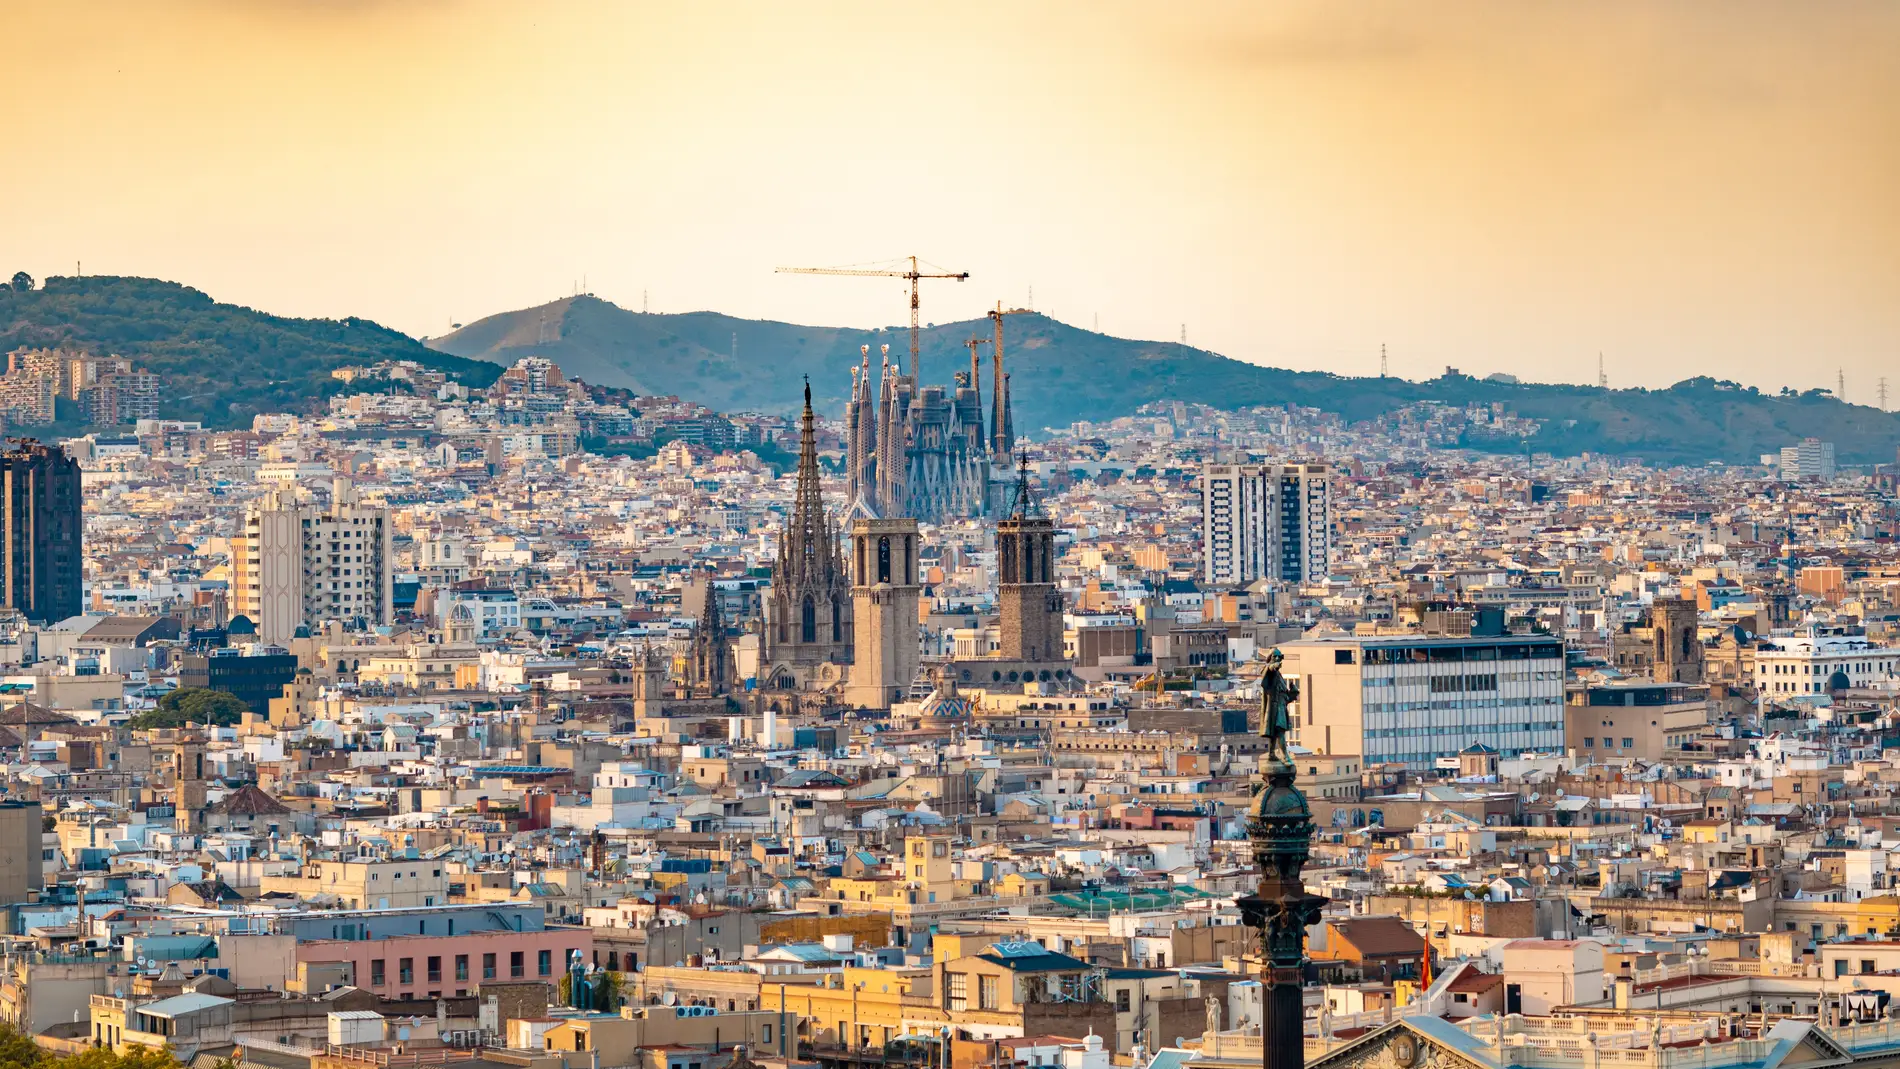 La iglesia modernista más alta del mundo está en España